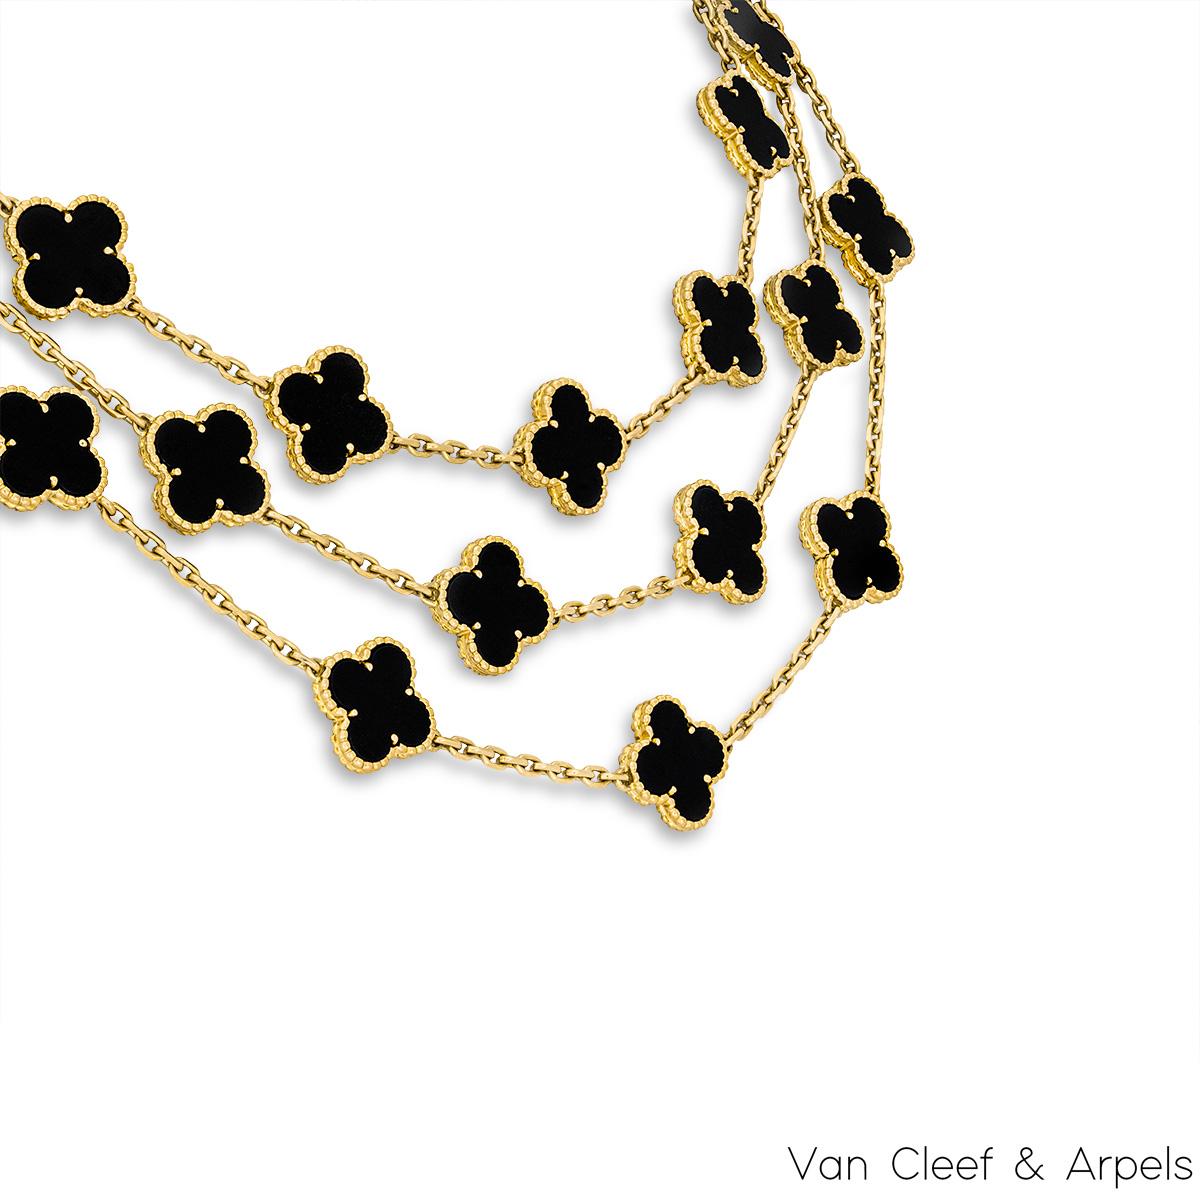 Ein ikonisches Collier aus 18 Karat Gelbgold von Van Cleef & Arpels aus der Vintage Alhambra Collection. Die Halskette zeigt 29 ikonische vierblättrige Kleeblattmotive, jedes mit einer Perlenkante und einer Onyxeinlage, die über die gesamte Länge